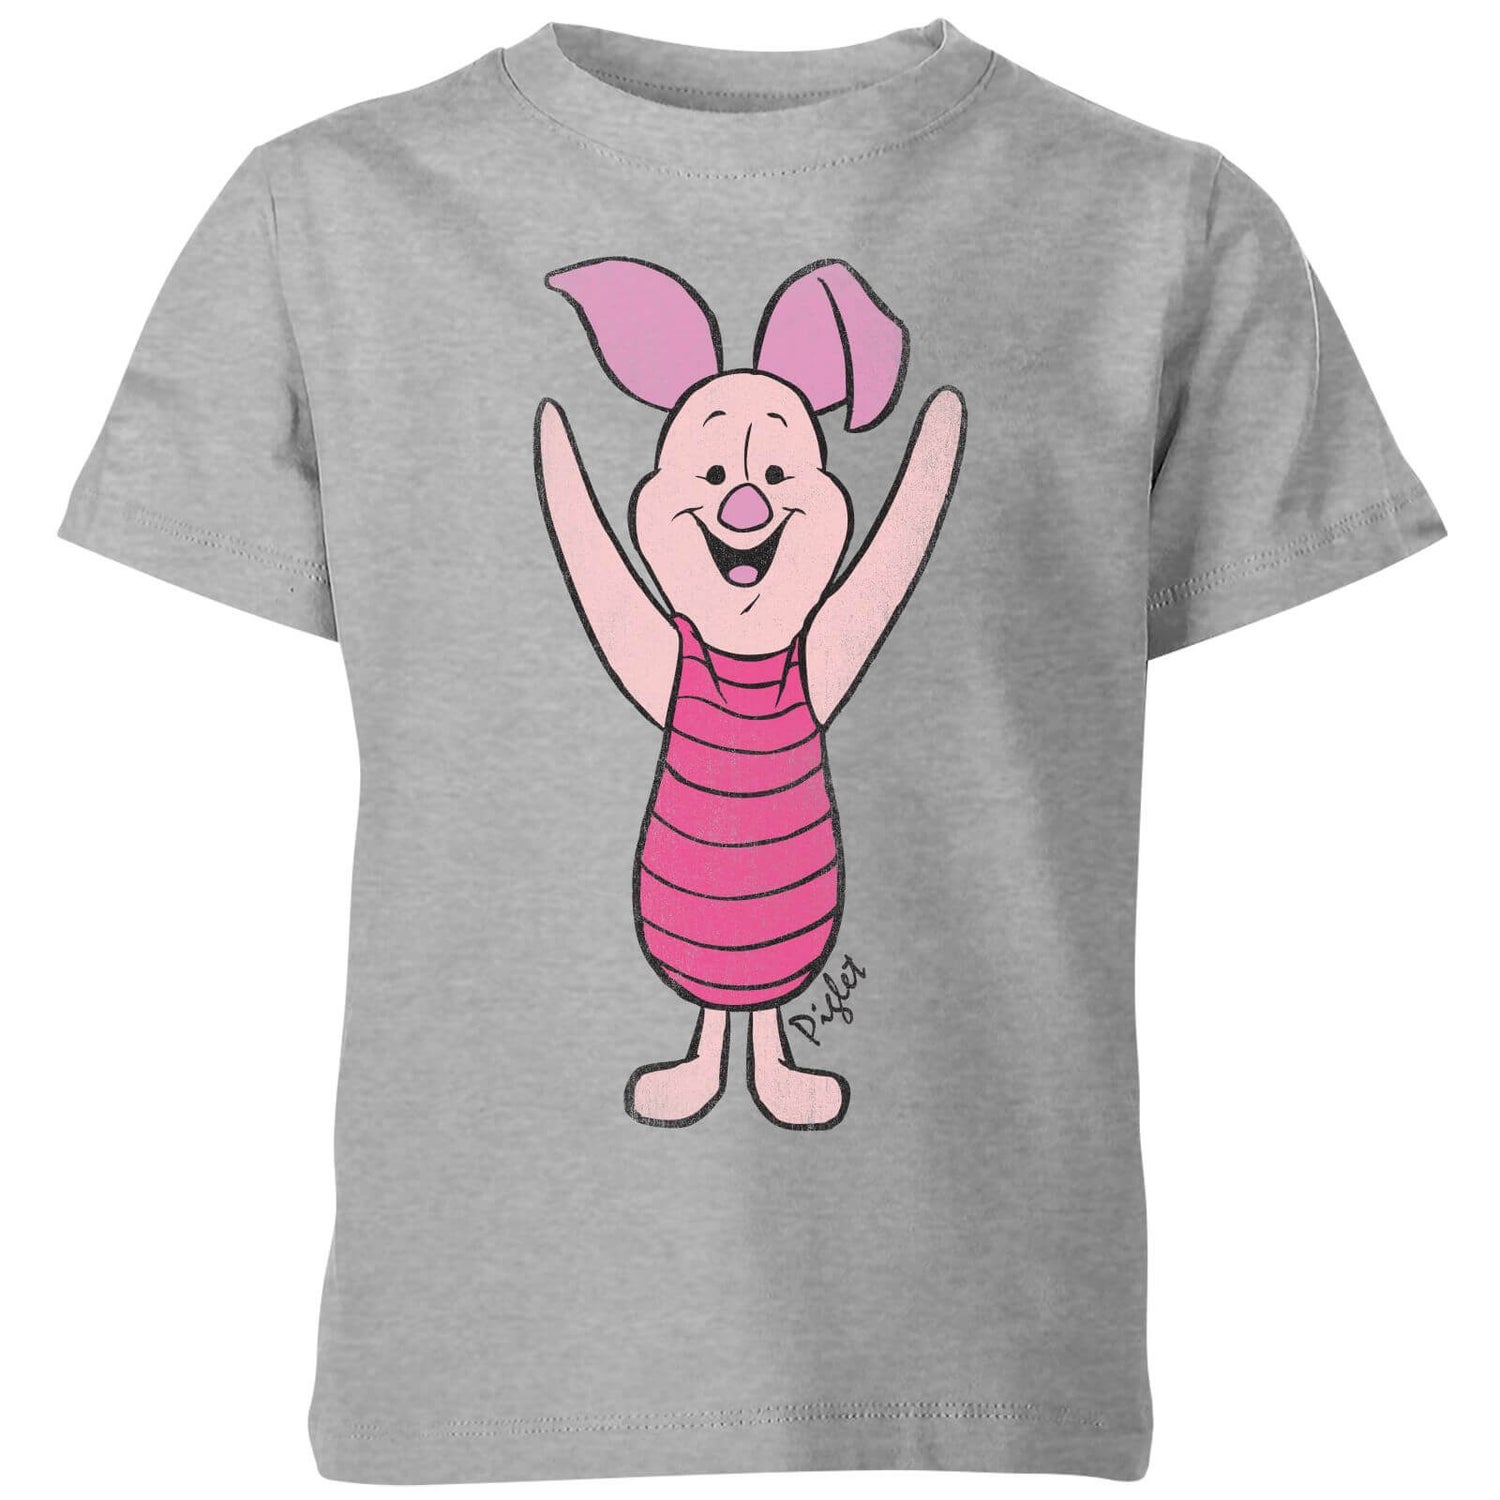 T-Shirt Enfant Disney Porcinet Winnie l'ourson - Gris